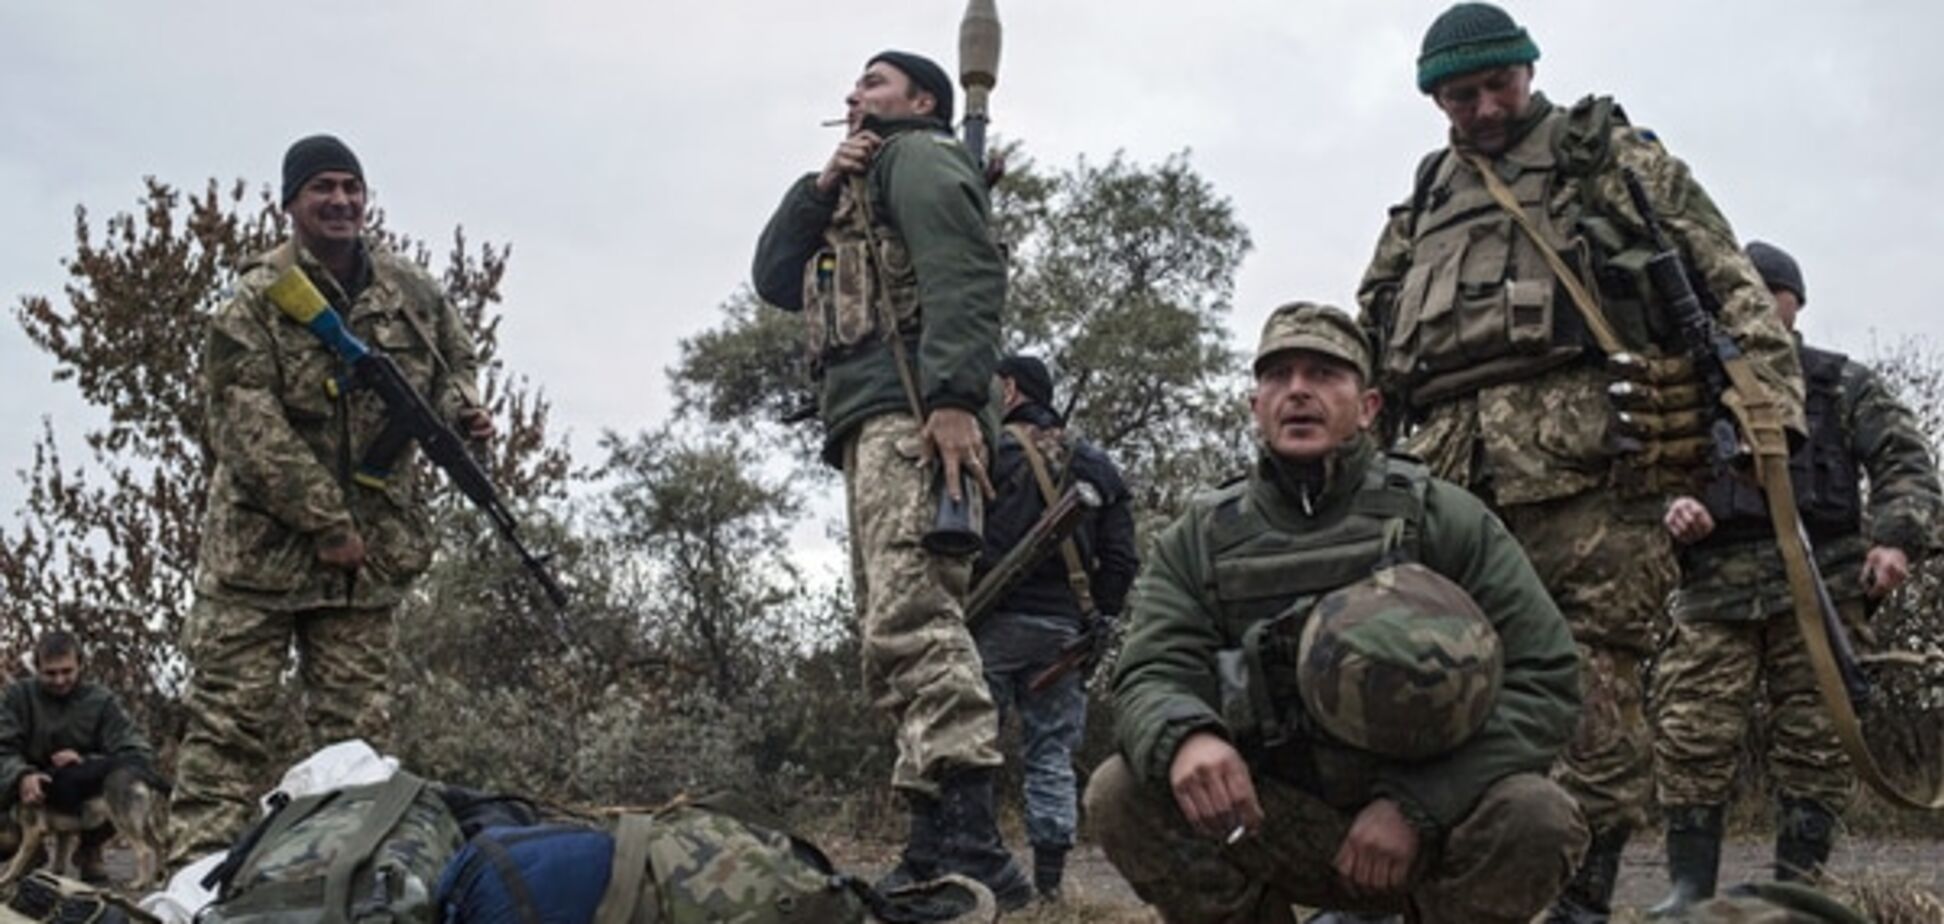 Украинские воины о боях на Донбассе: не будет патронов - будем зубами грызть